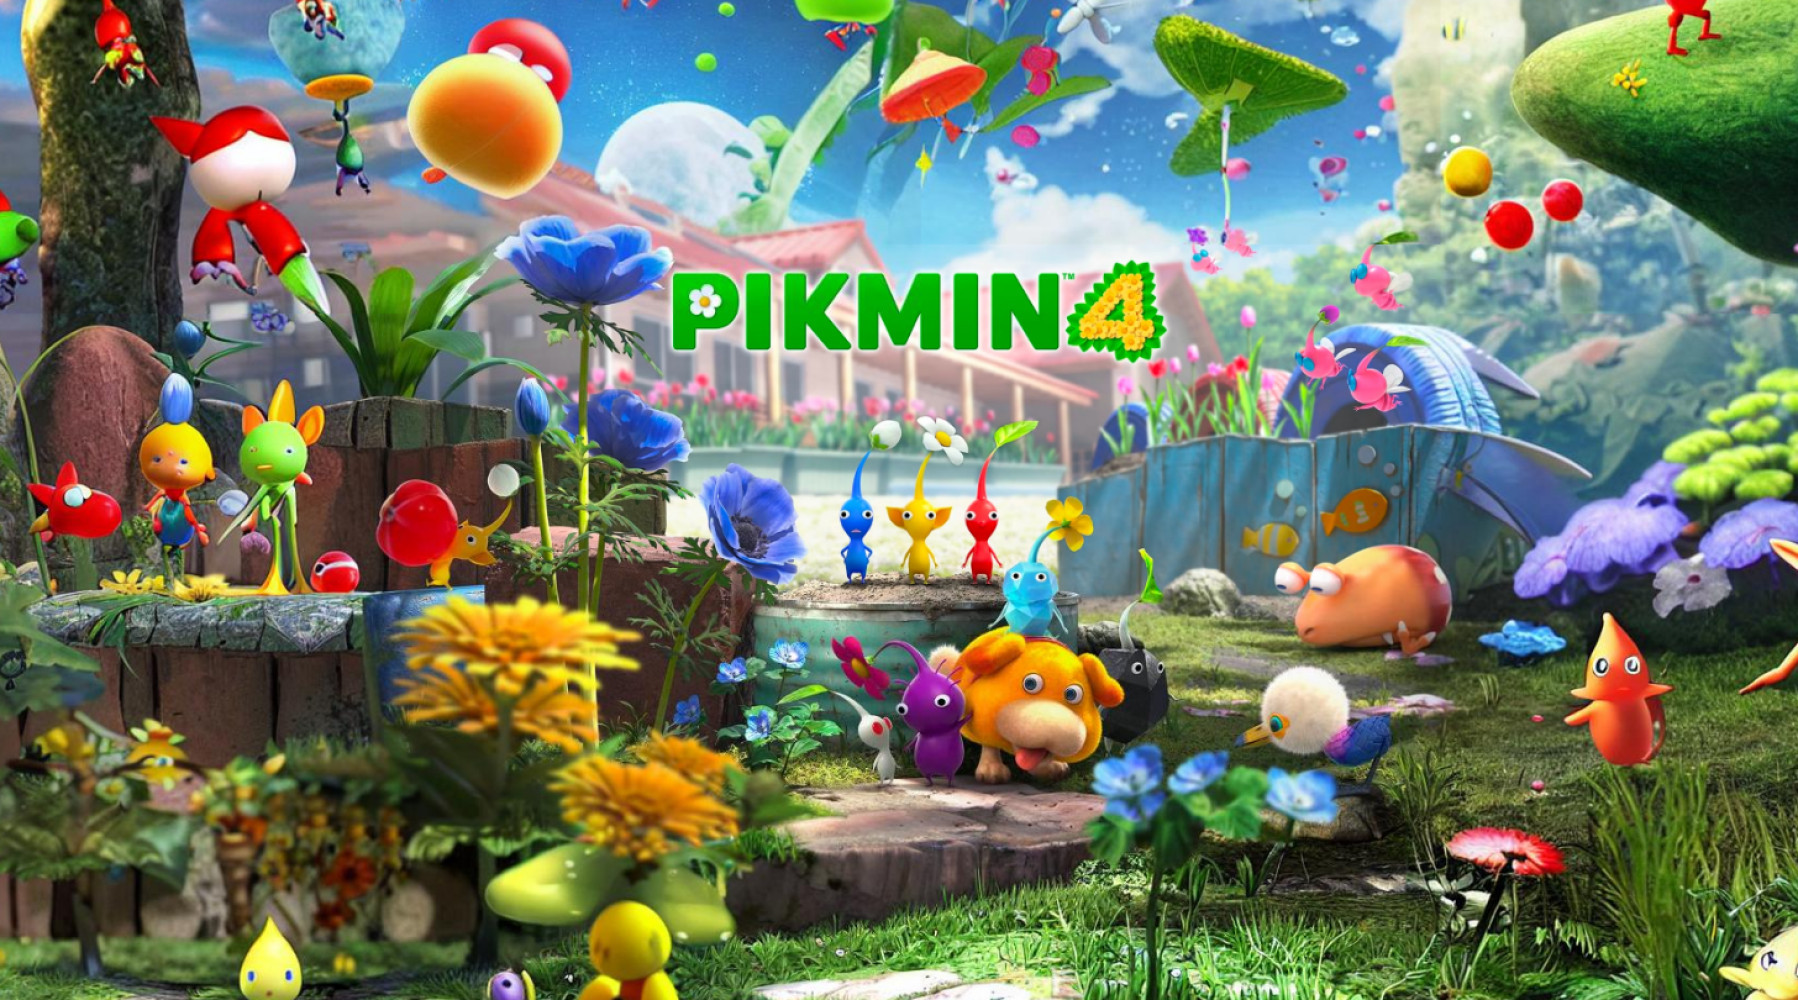 Er is een nieuwe trailer voor Pikmin 4 uitgebracht, waarin we meer te weten komen over de kenmerken van verschillende soorten pikmin